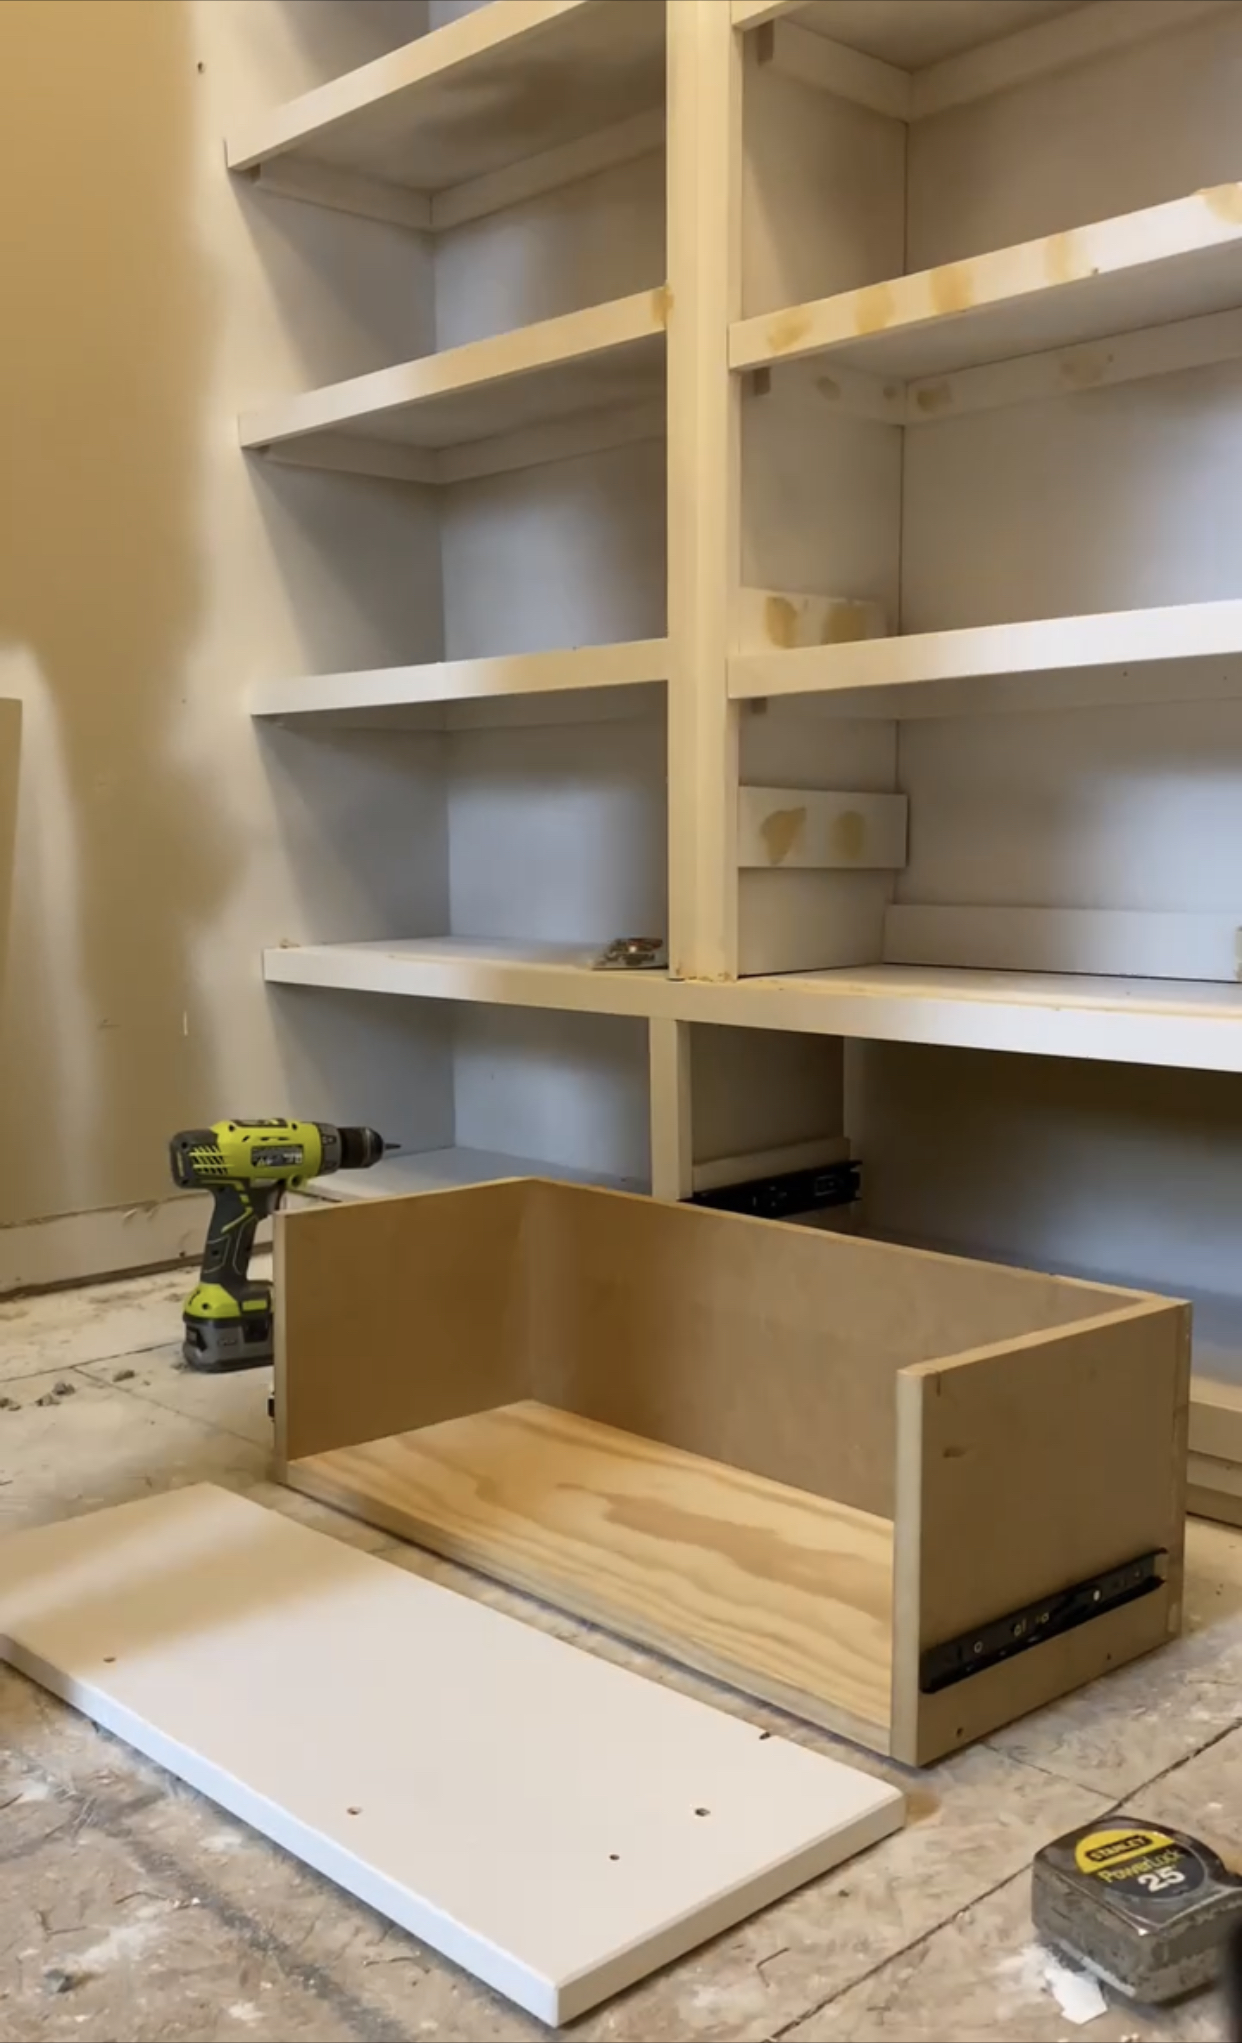 Plywood Shelves for Closet